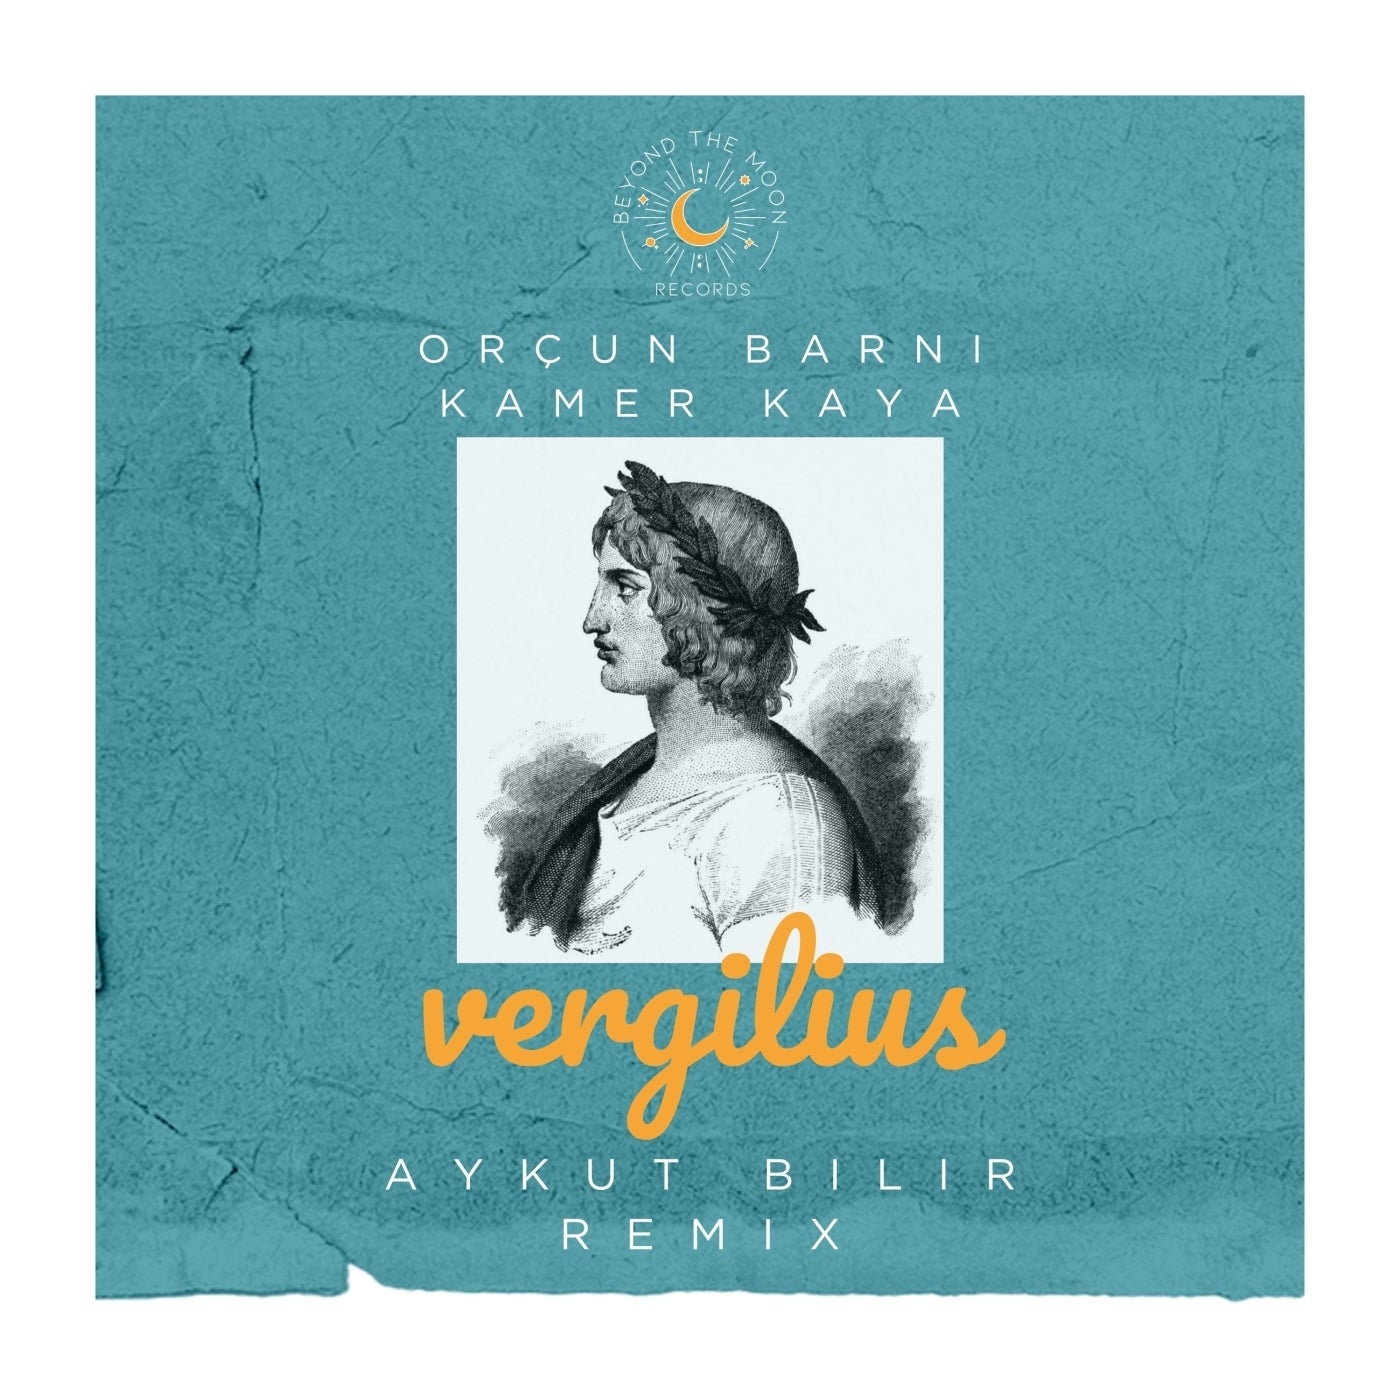 Vergilius